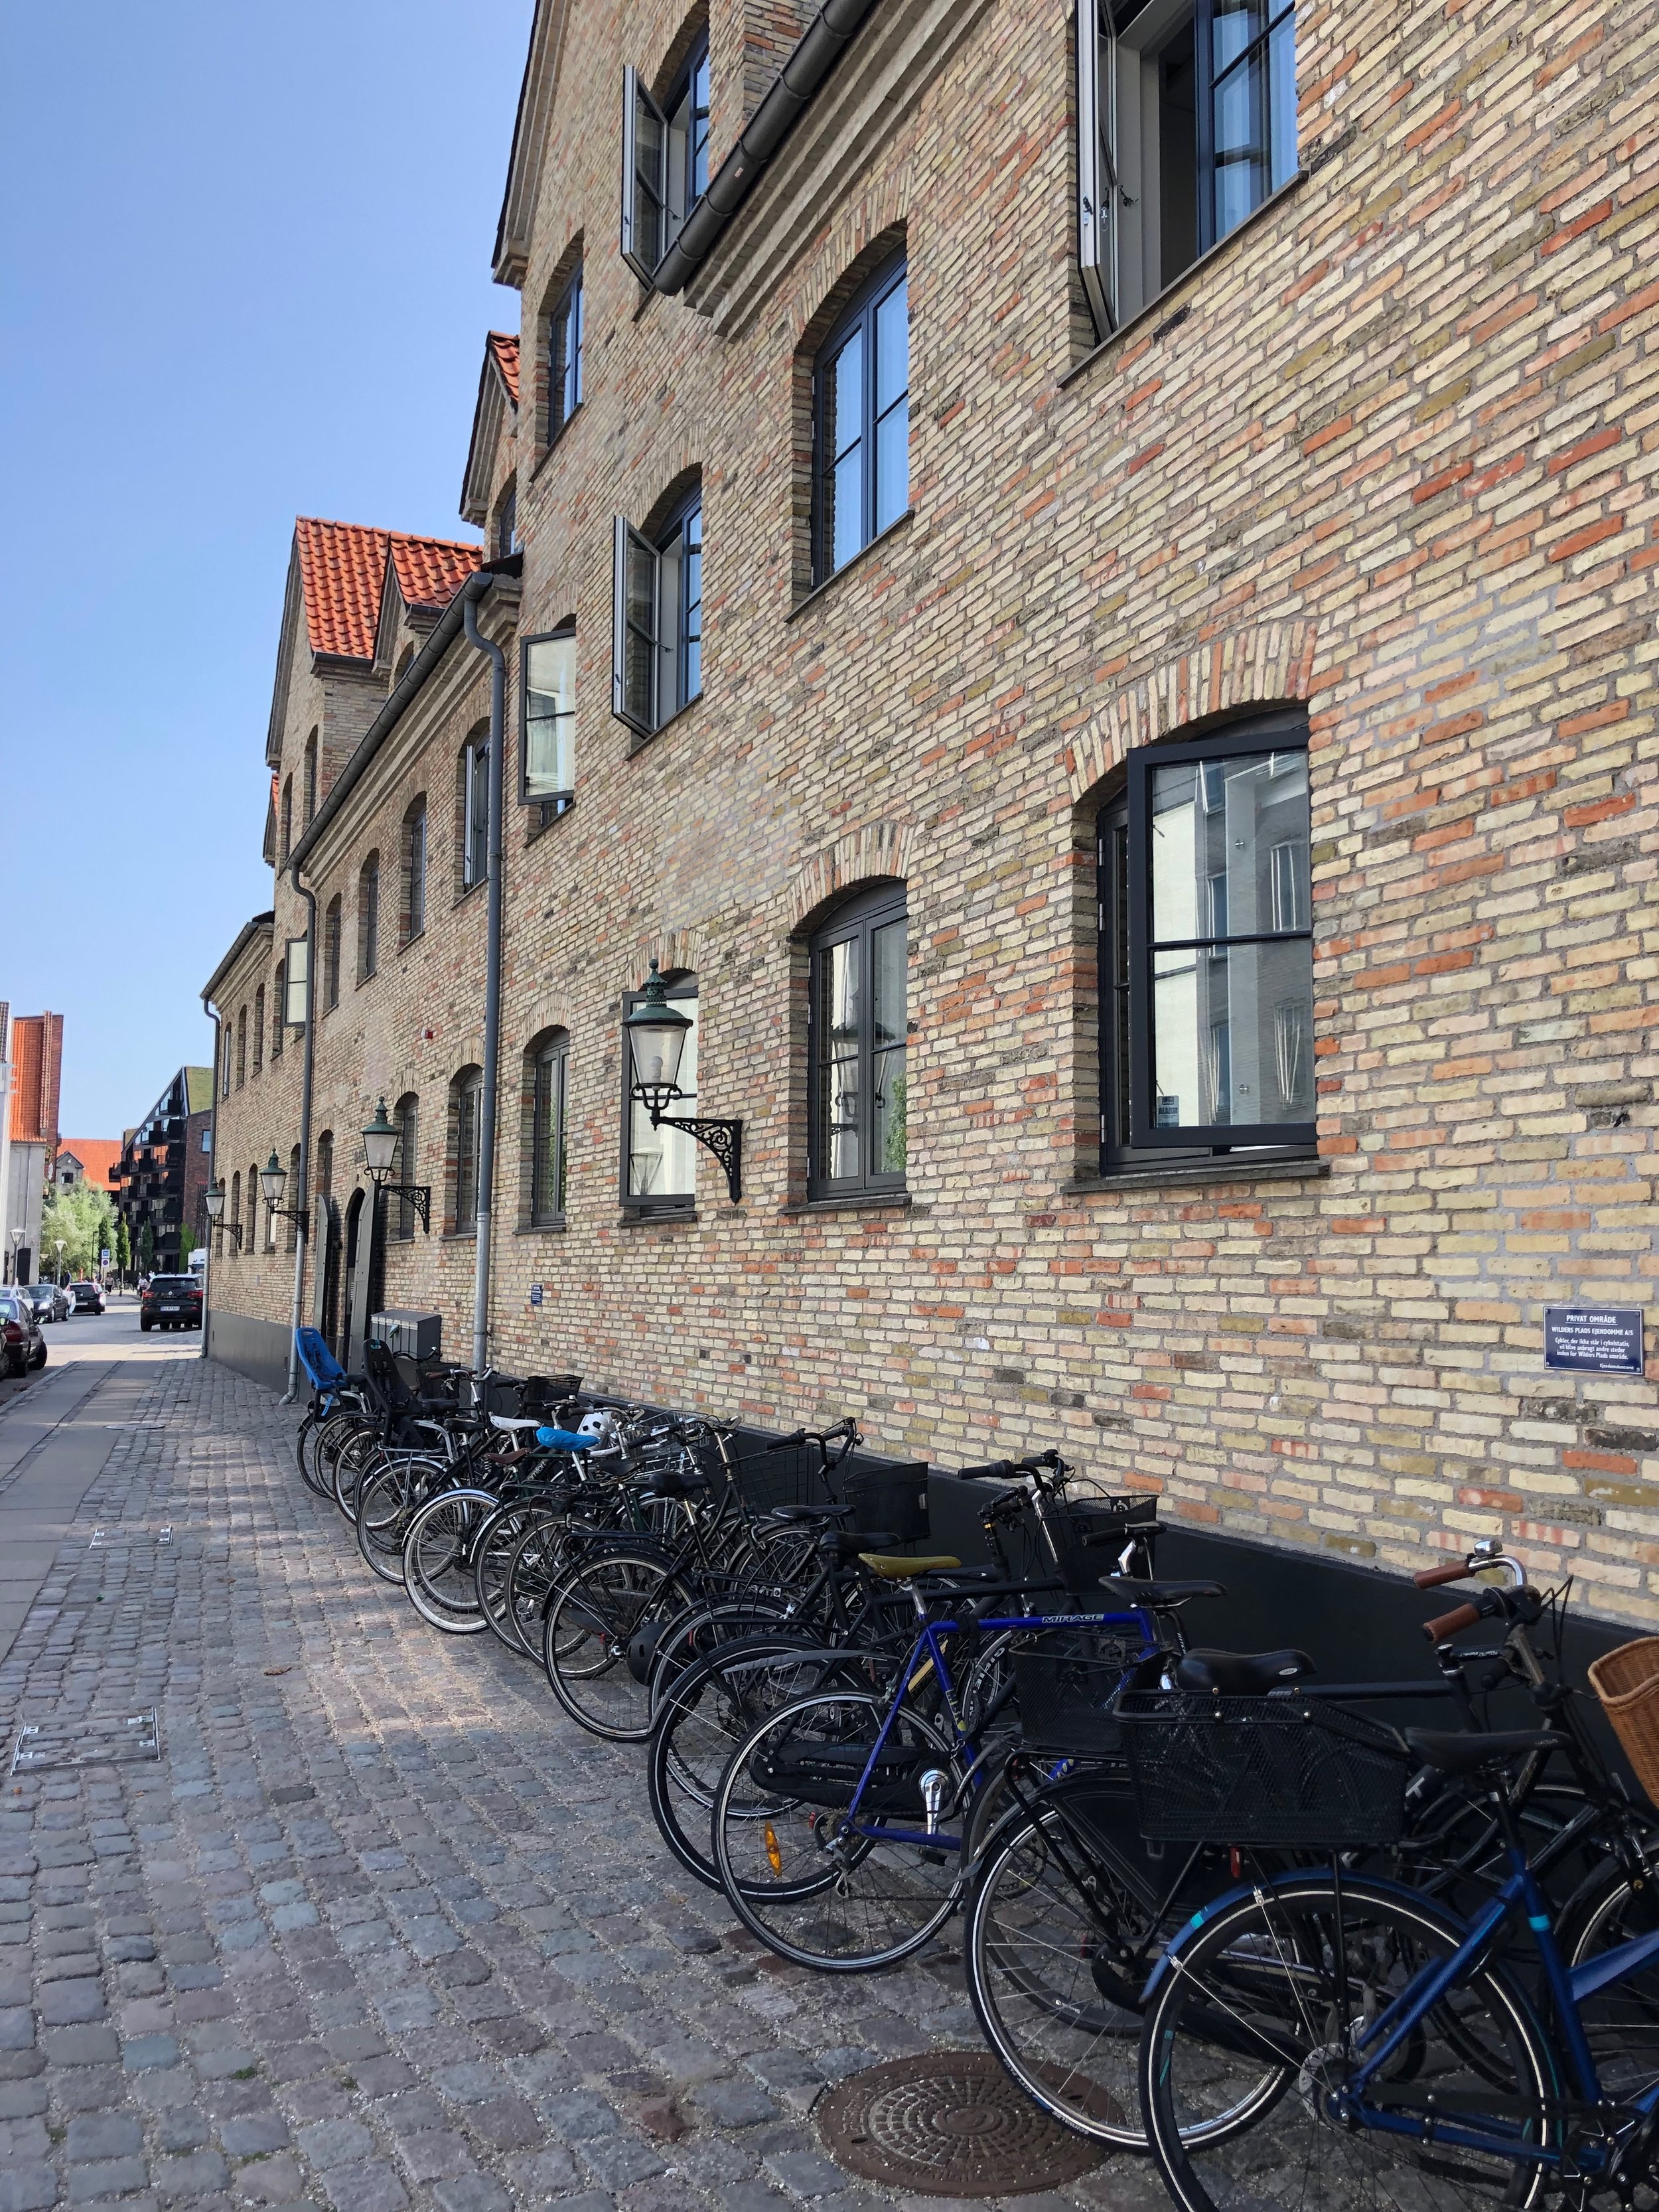 Biking is the way locals get around Copenhagen